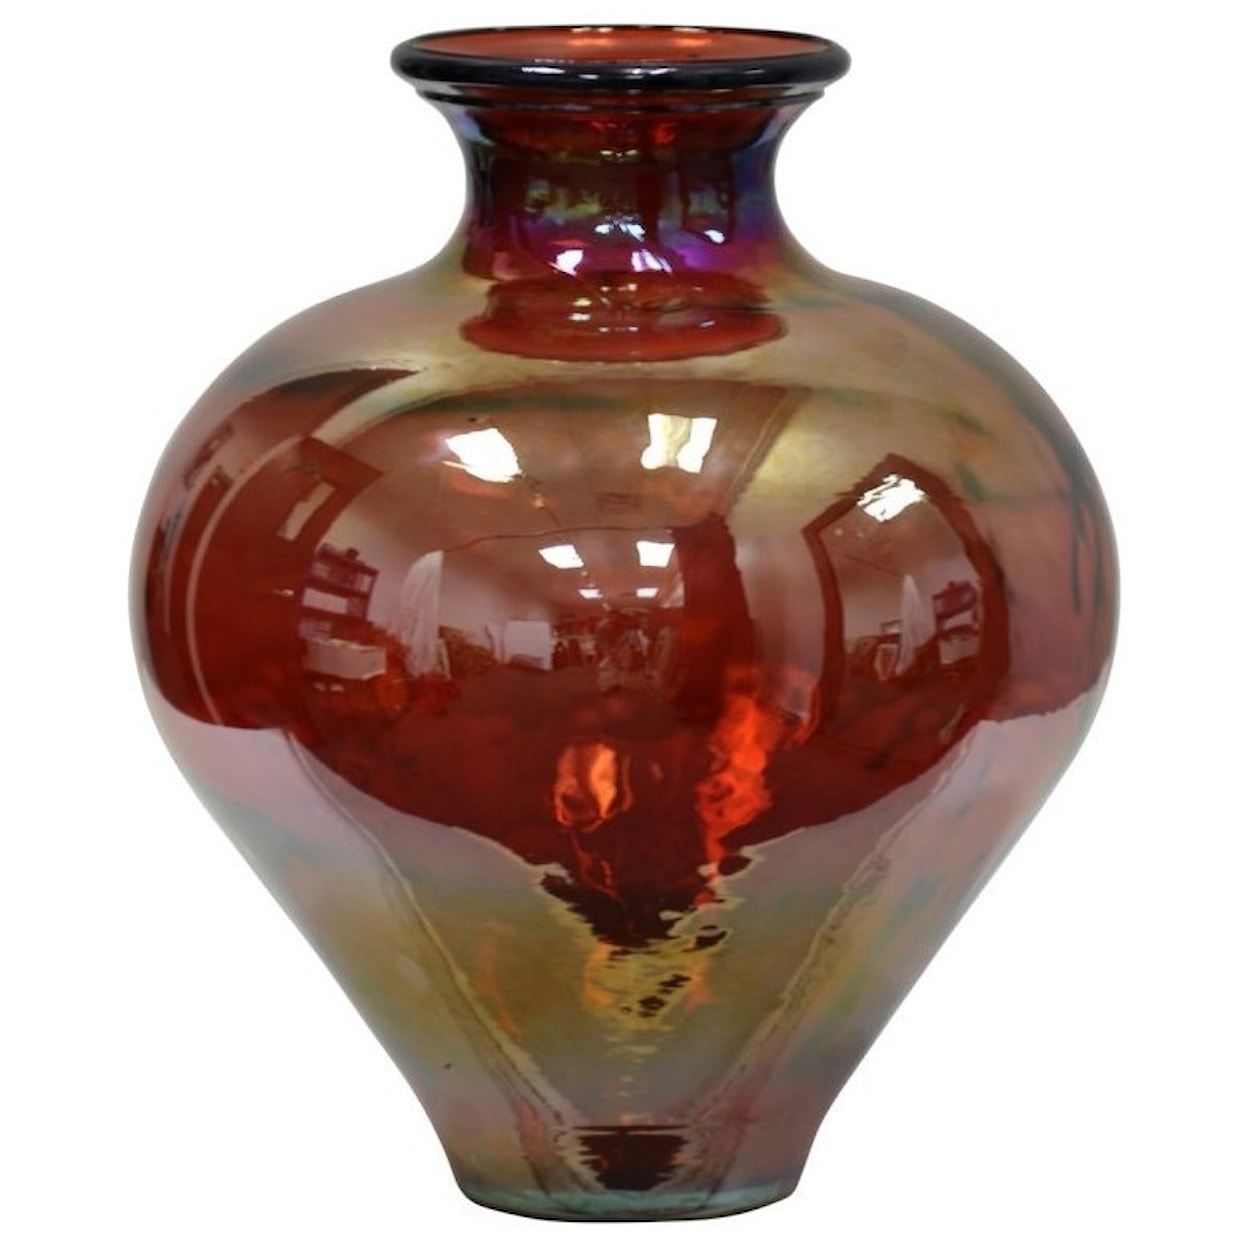 StyleCraft Accessories Decorative Glass Jar